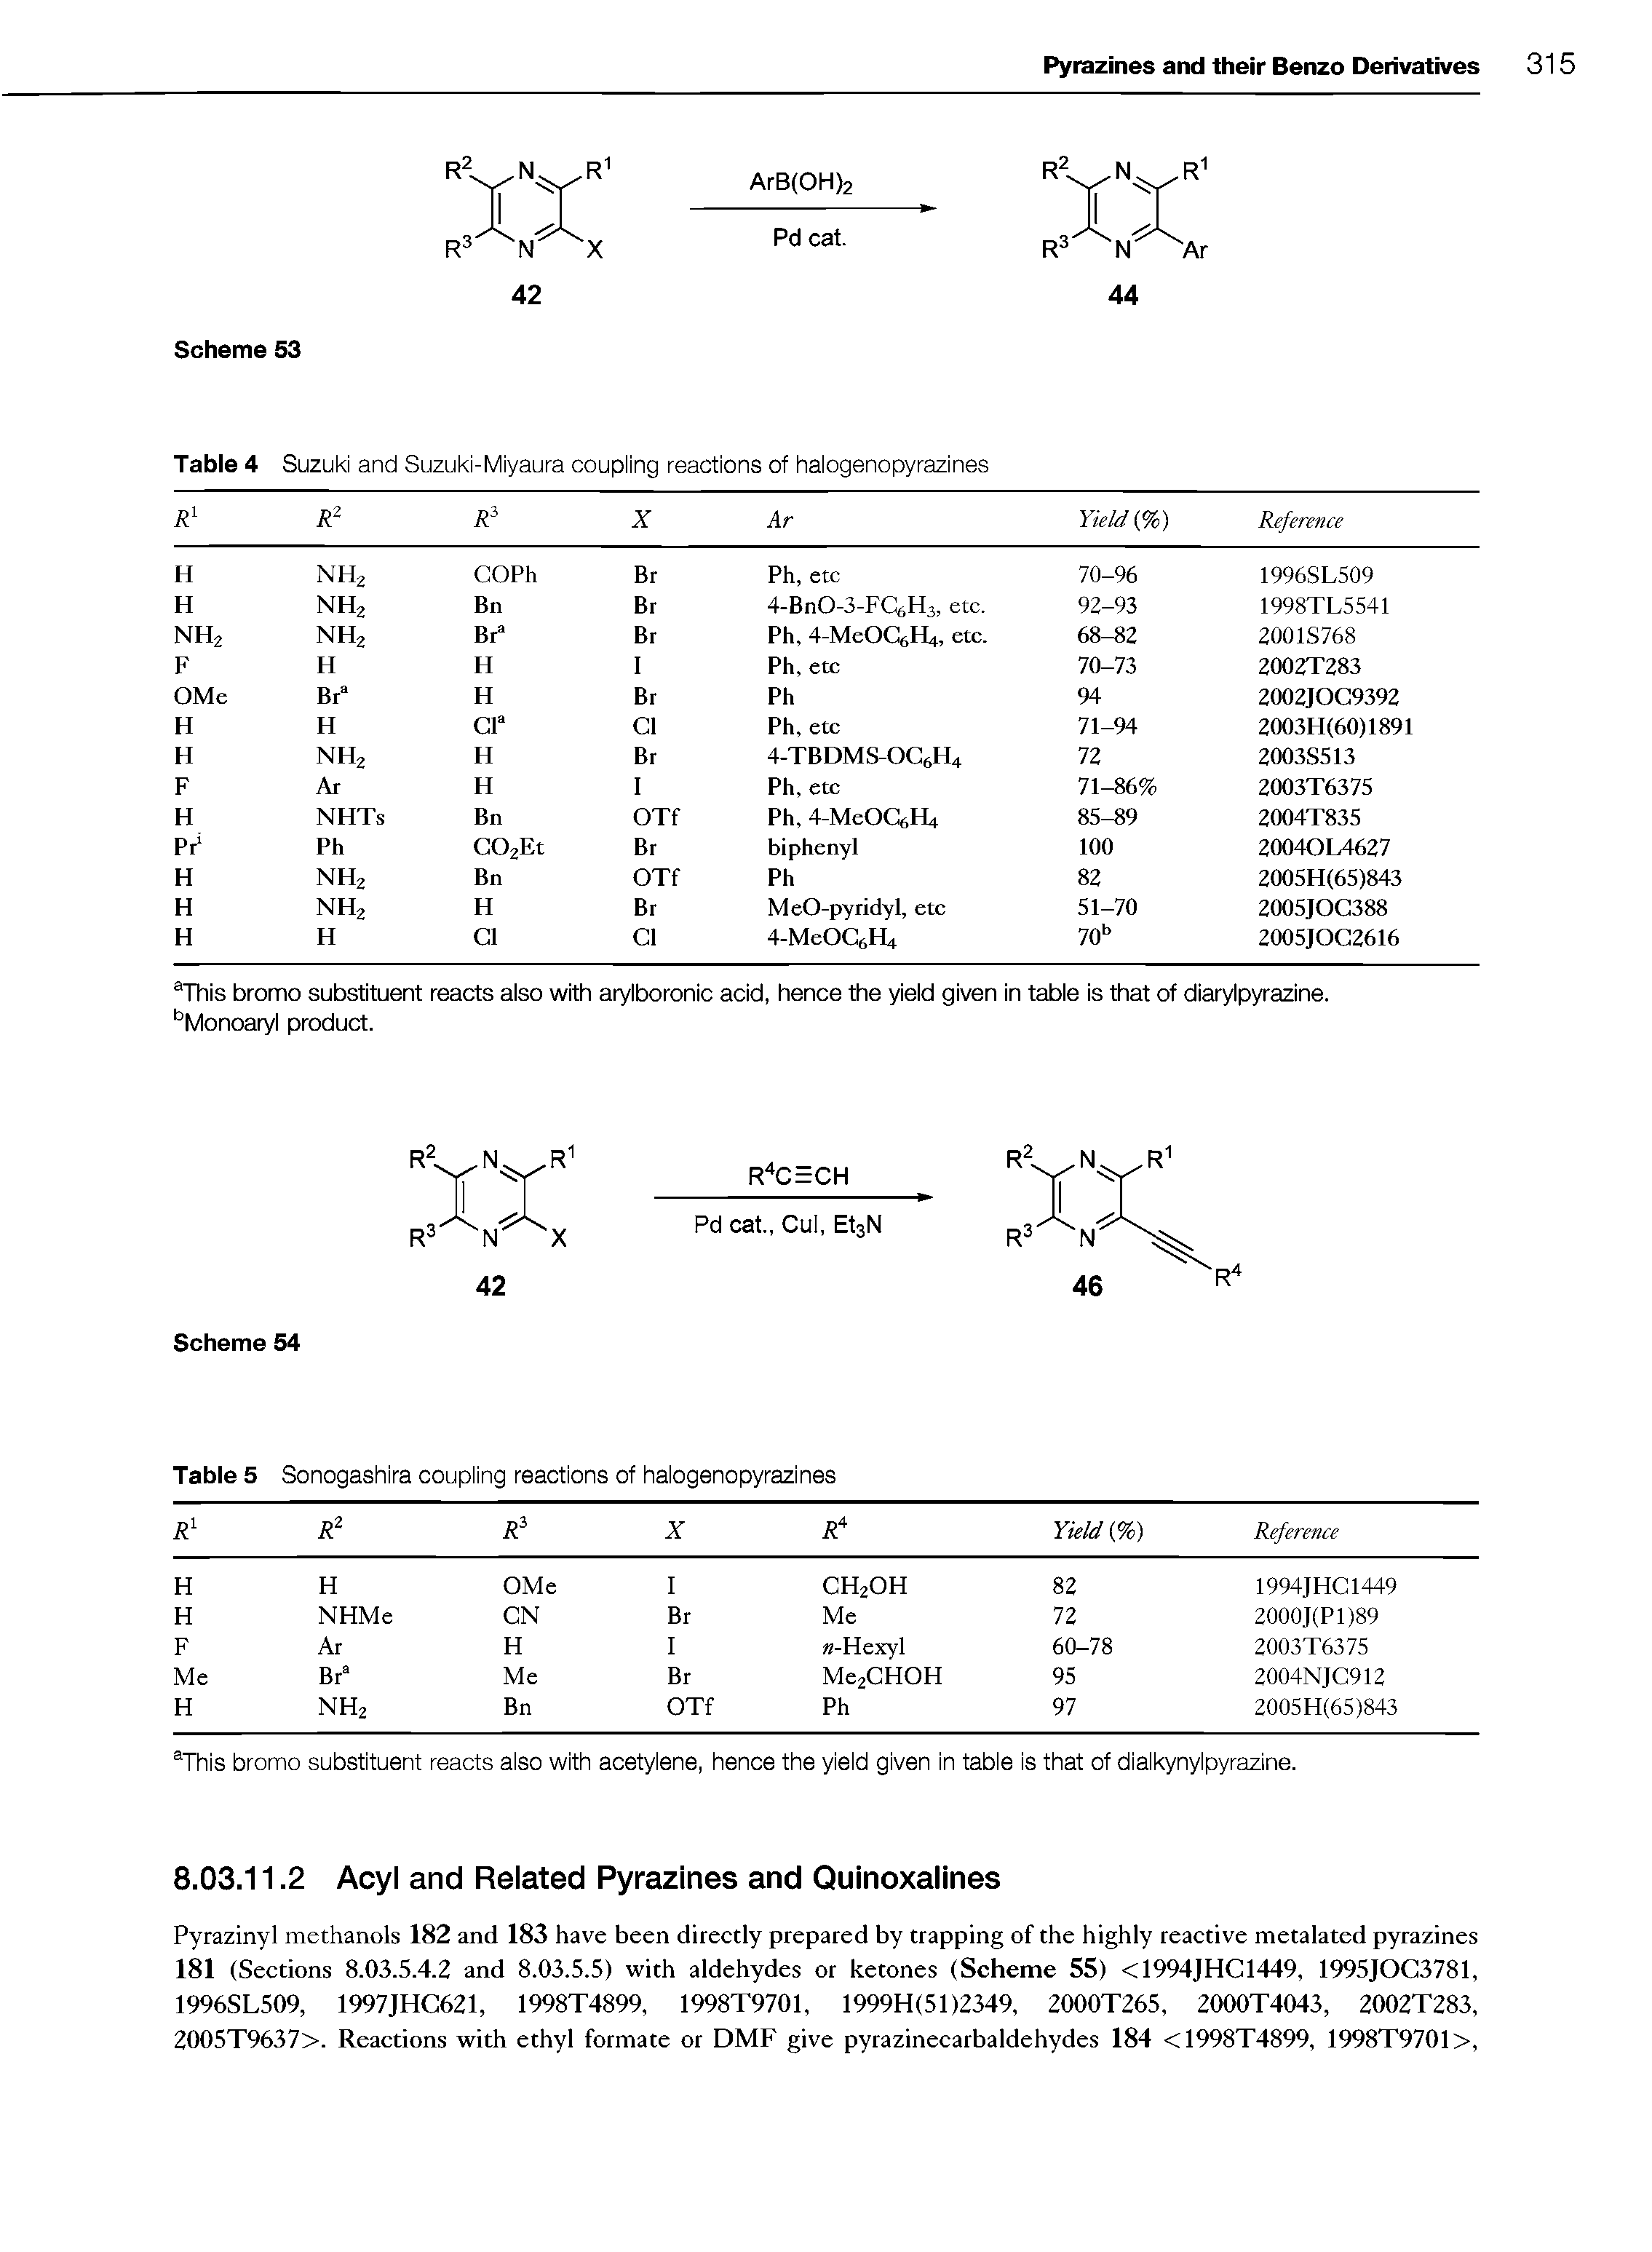 Table 4 Suzuki and Suzuki-Miyaura coupling reactions of halogenopyrazines...